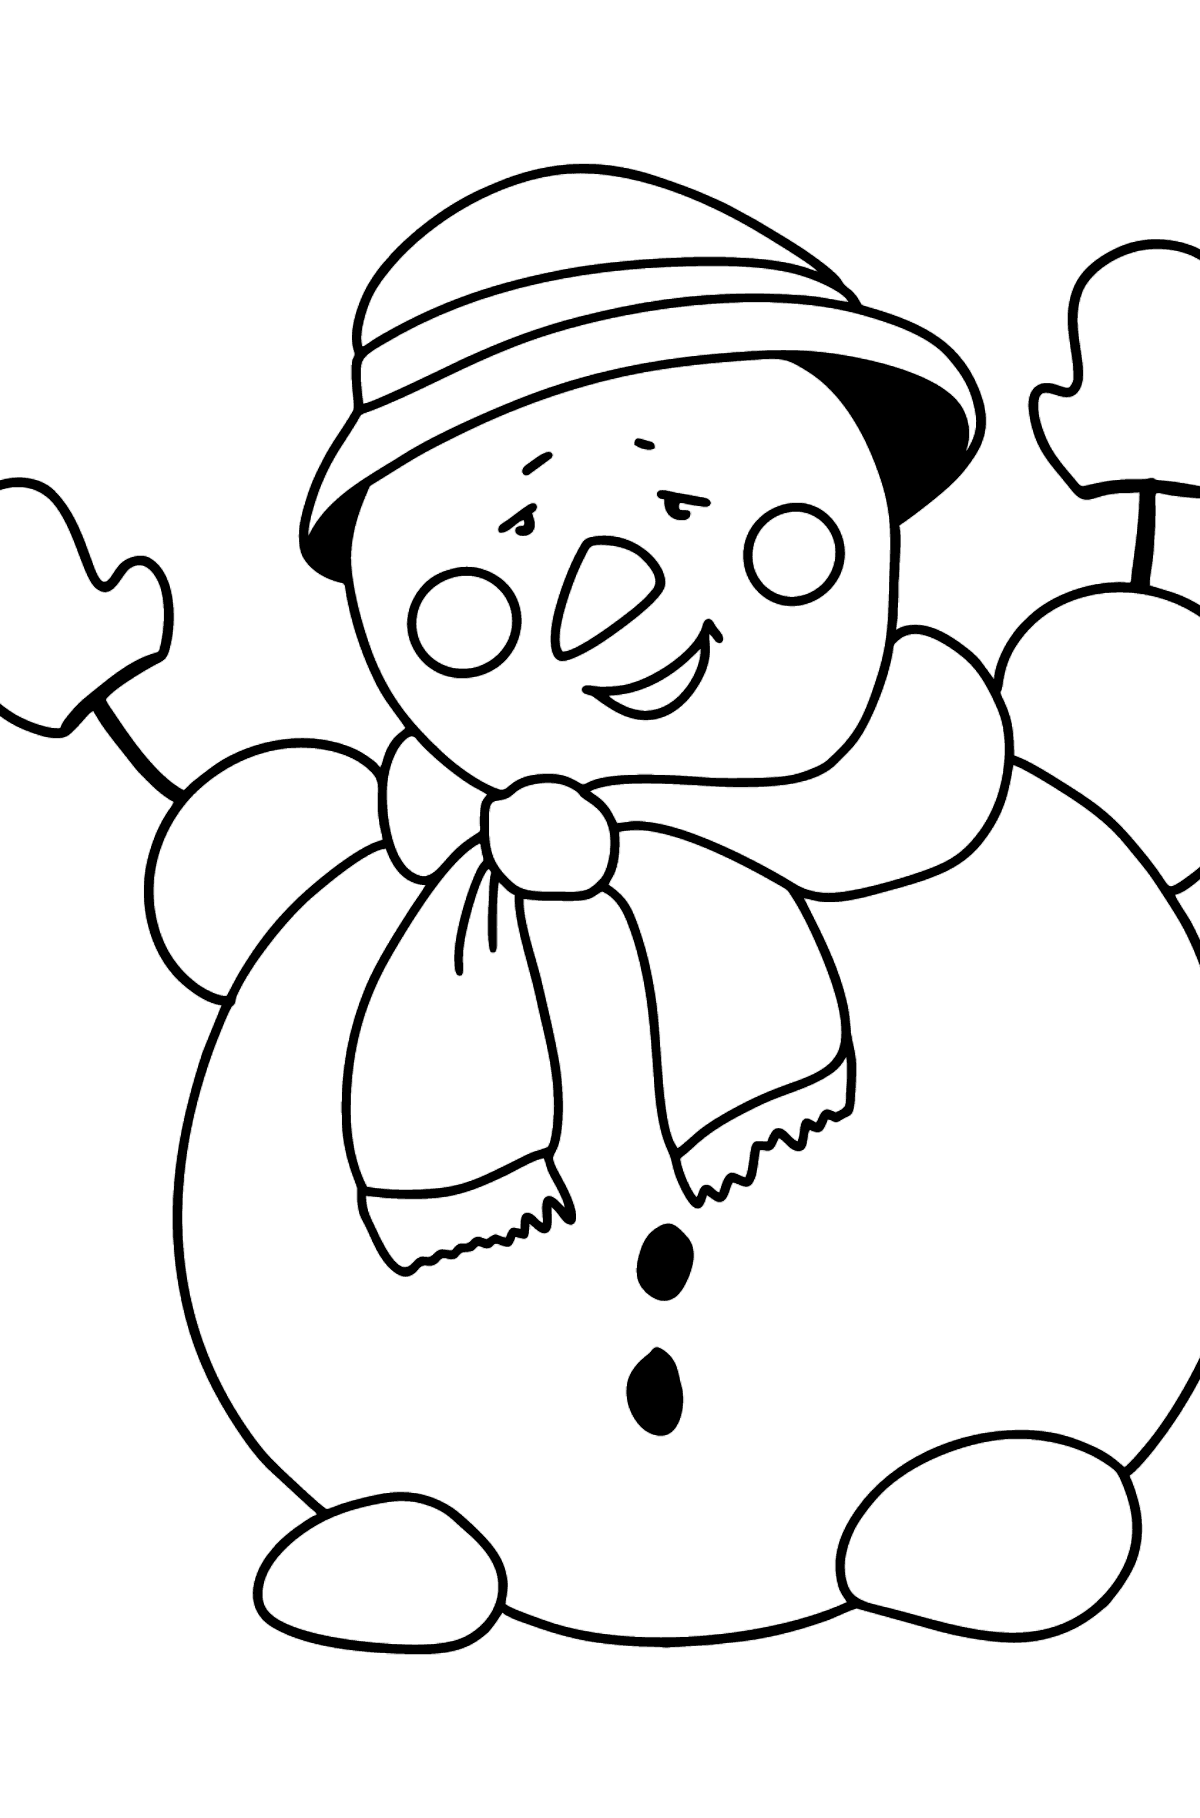 Tegning til fargelegging glad snømann - Tegninger til fargelegging for barn